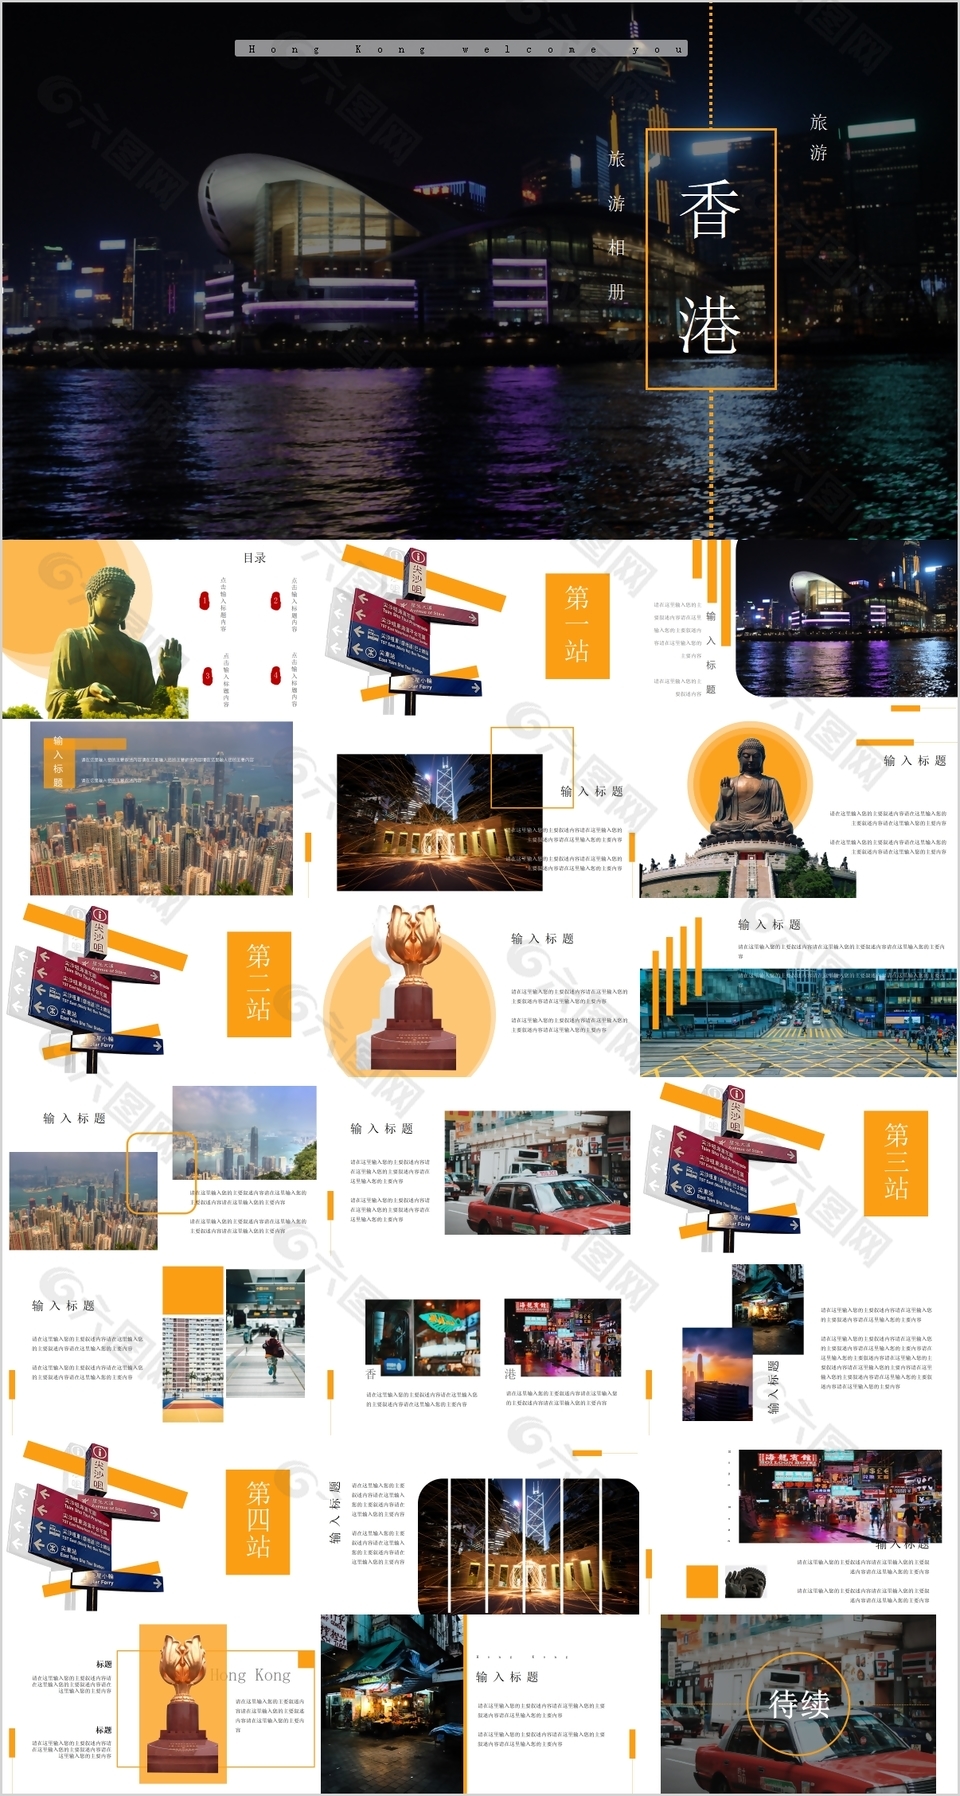 个性香港旅游电子相册宣传介绍PPT素材